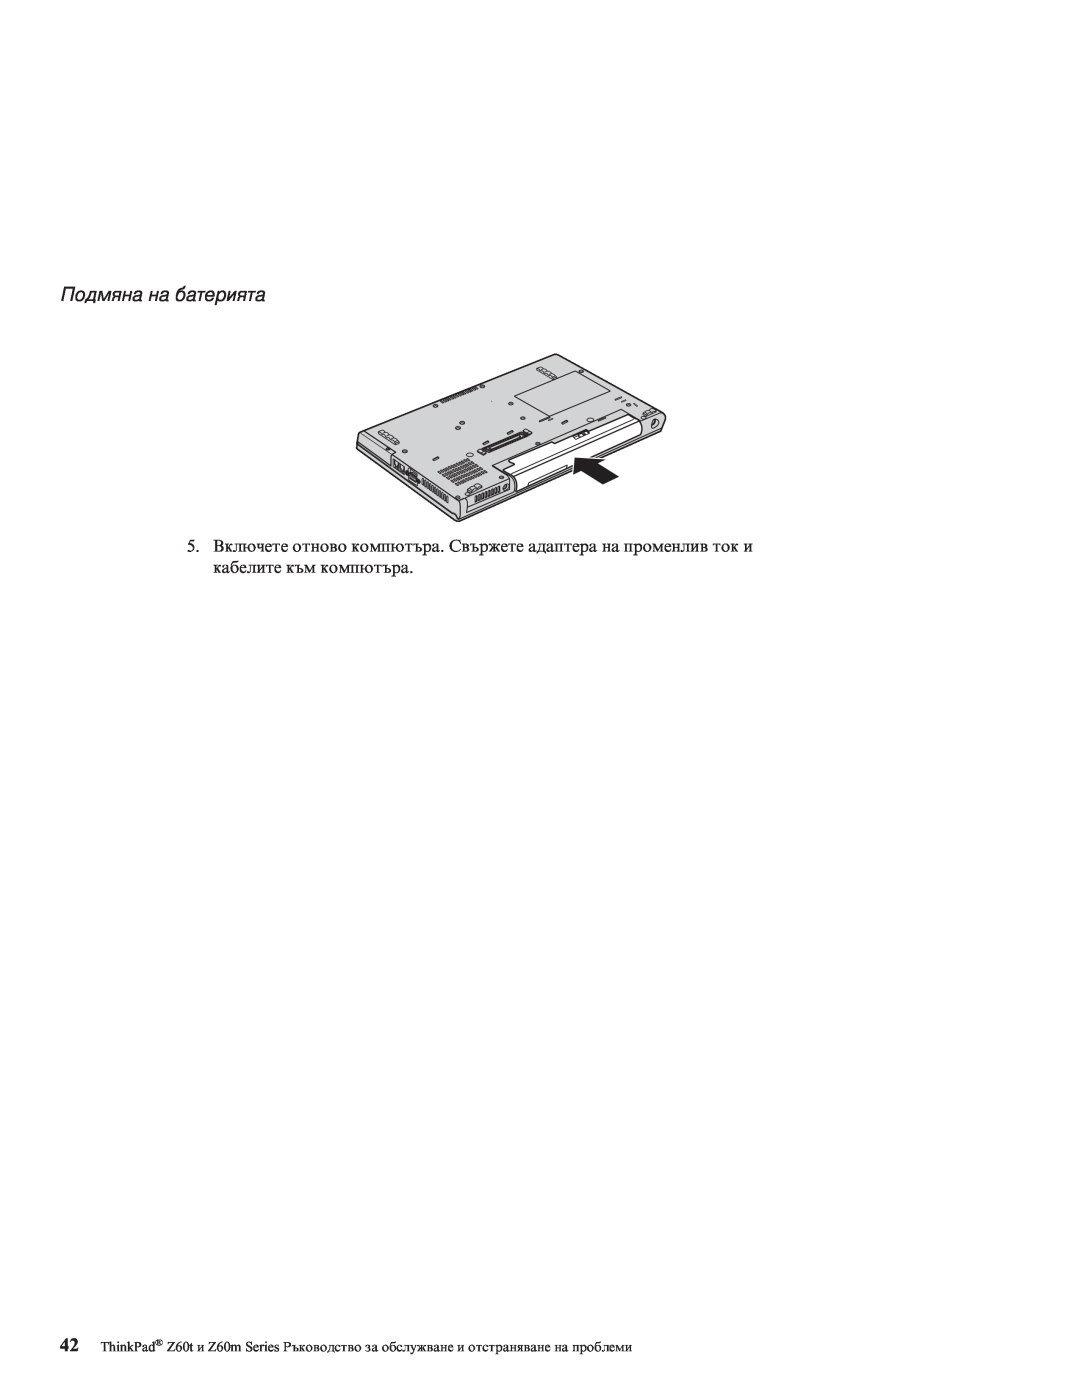 Lenovo Z60M manual Подмяна на батерията 